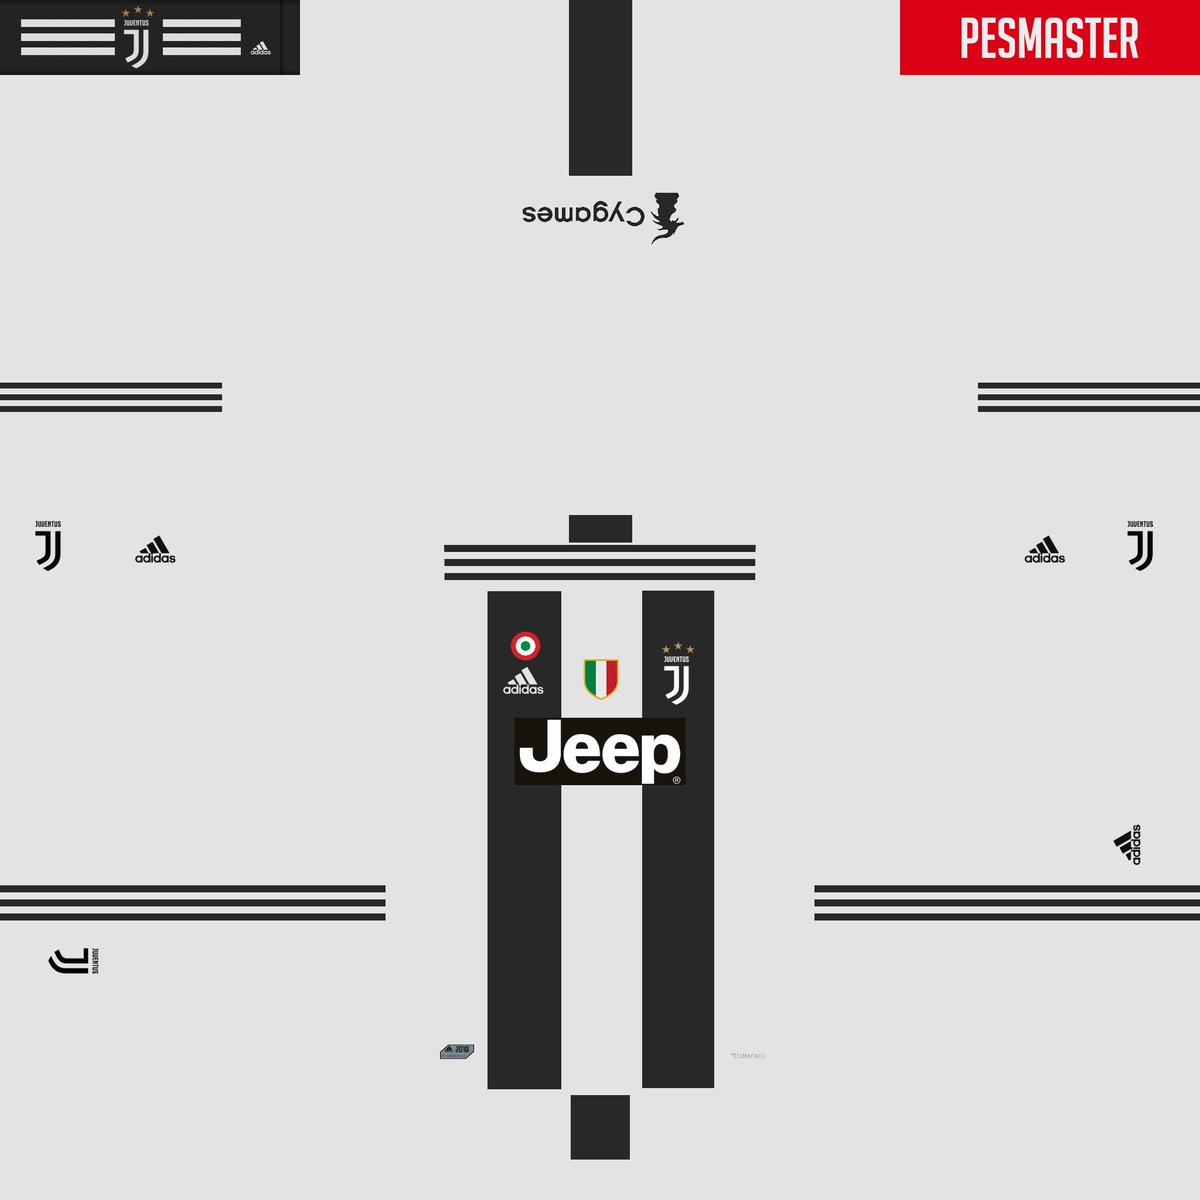 ポコ Mhライズ初心者 ユベントスのユニフォーム作ってみた 初めてあってるか分からんけど Pes18 ウイイレ18 ウイイレエディット Pesedit ユニフォーム Juventus